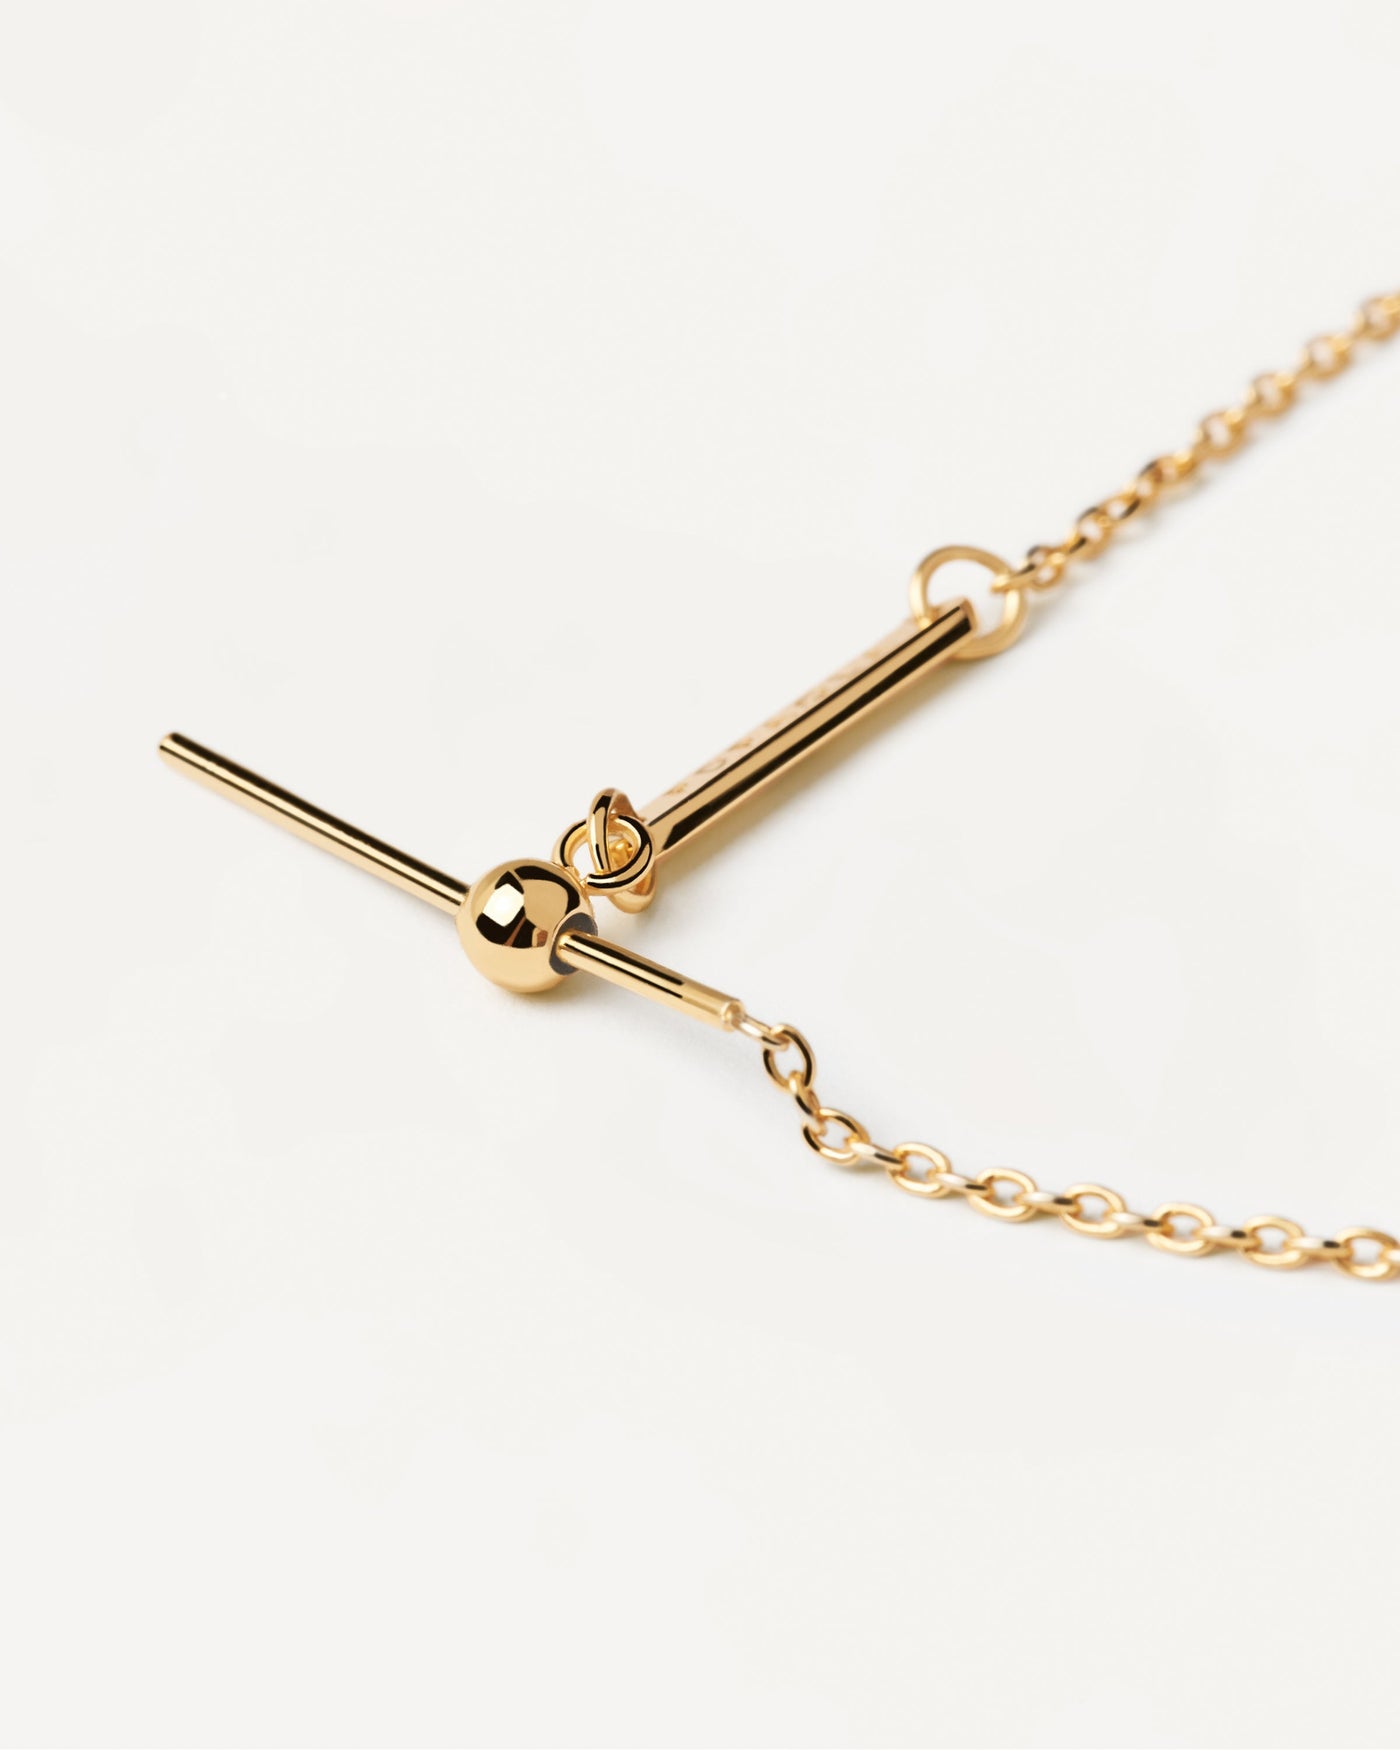 Build Your Luxury 18ct Gold Charm Bracelet — Annoushka UK